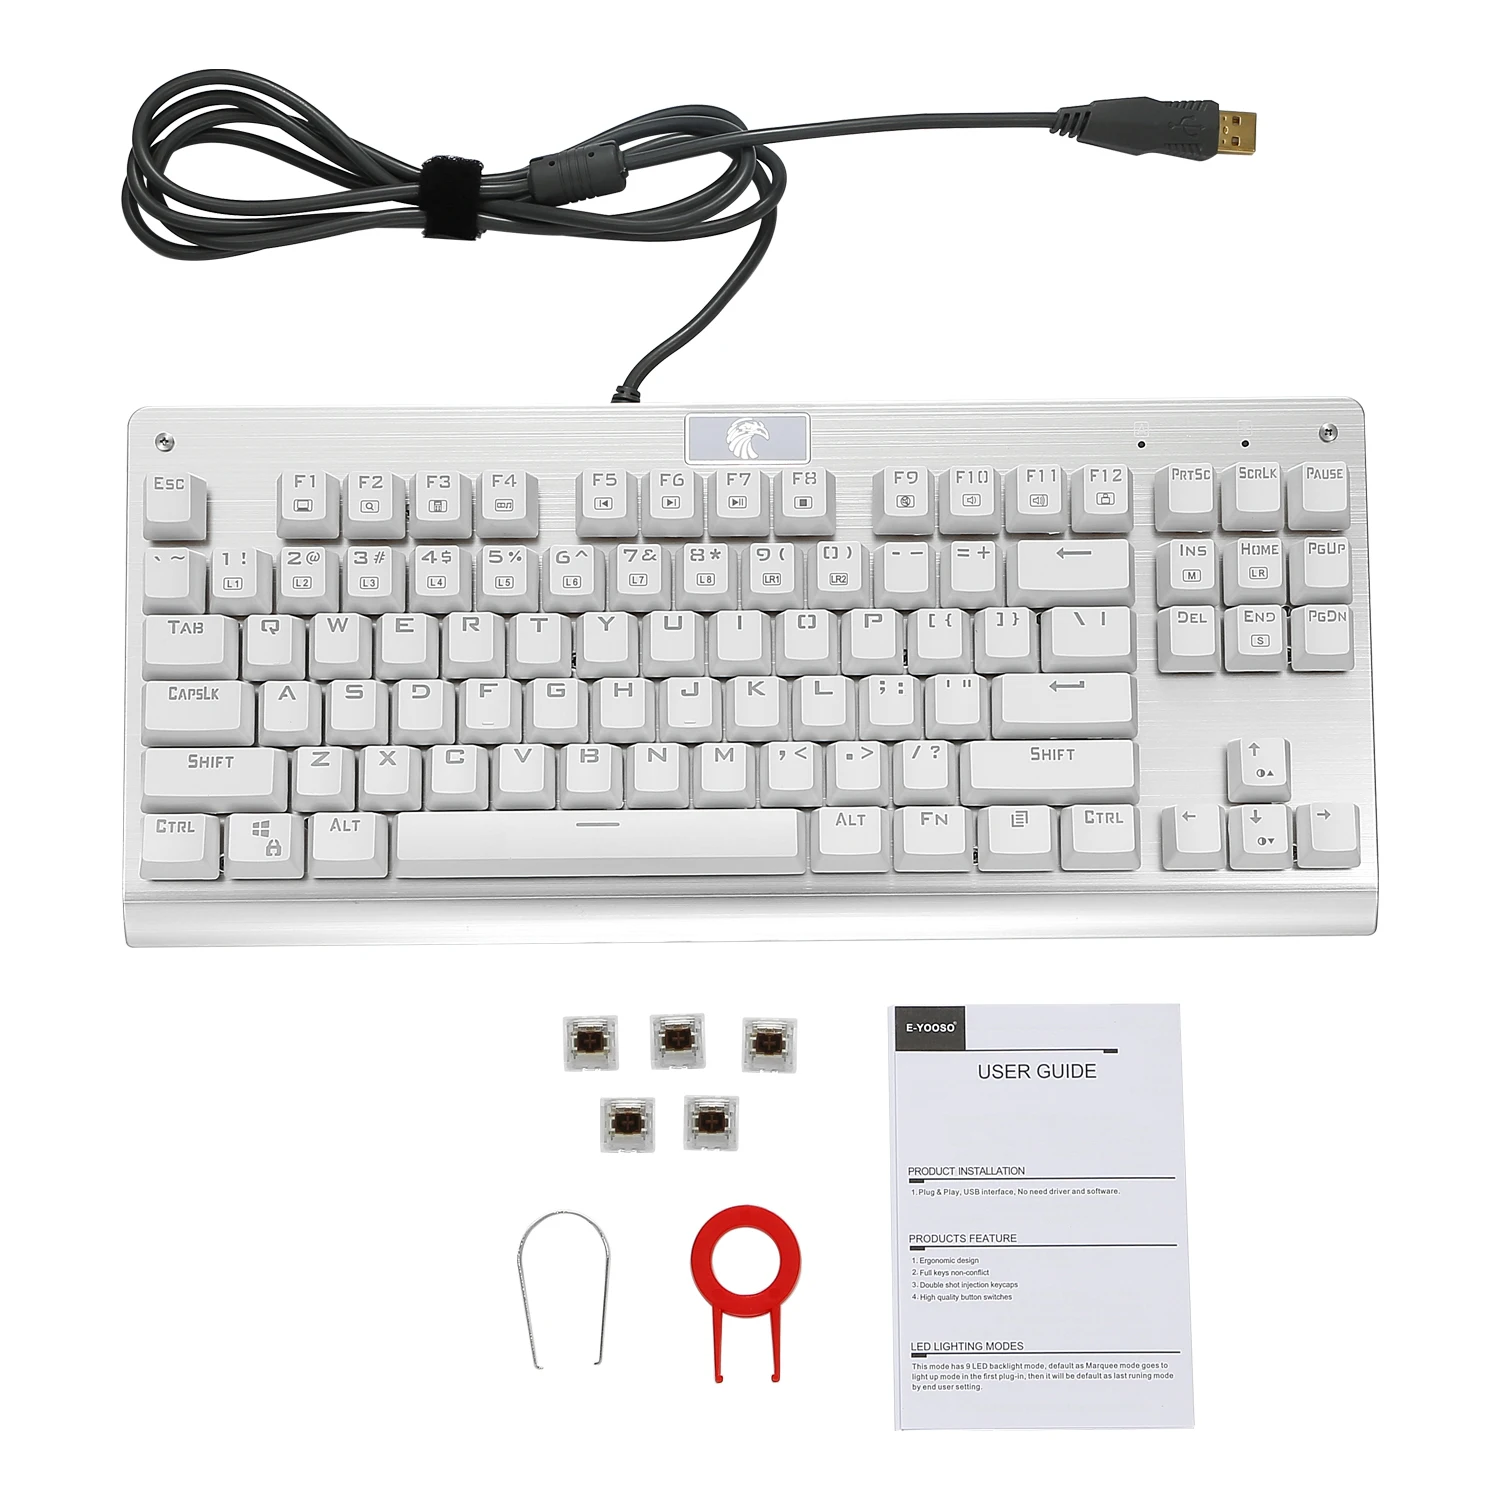 Z77 Eagle игровая клавиатура без ключа Механическая Outemu переключатель светодиодный подсветка 87 ключ алюминиевая клавиатура для геймера Typist